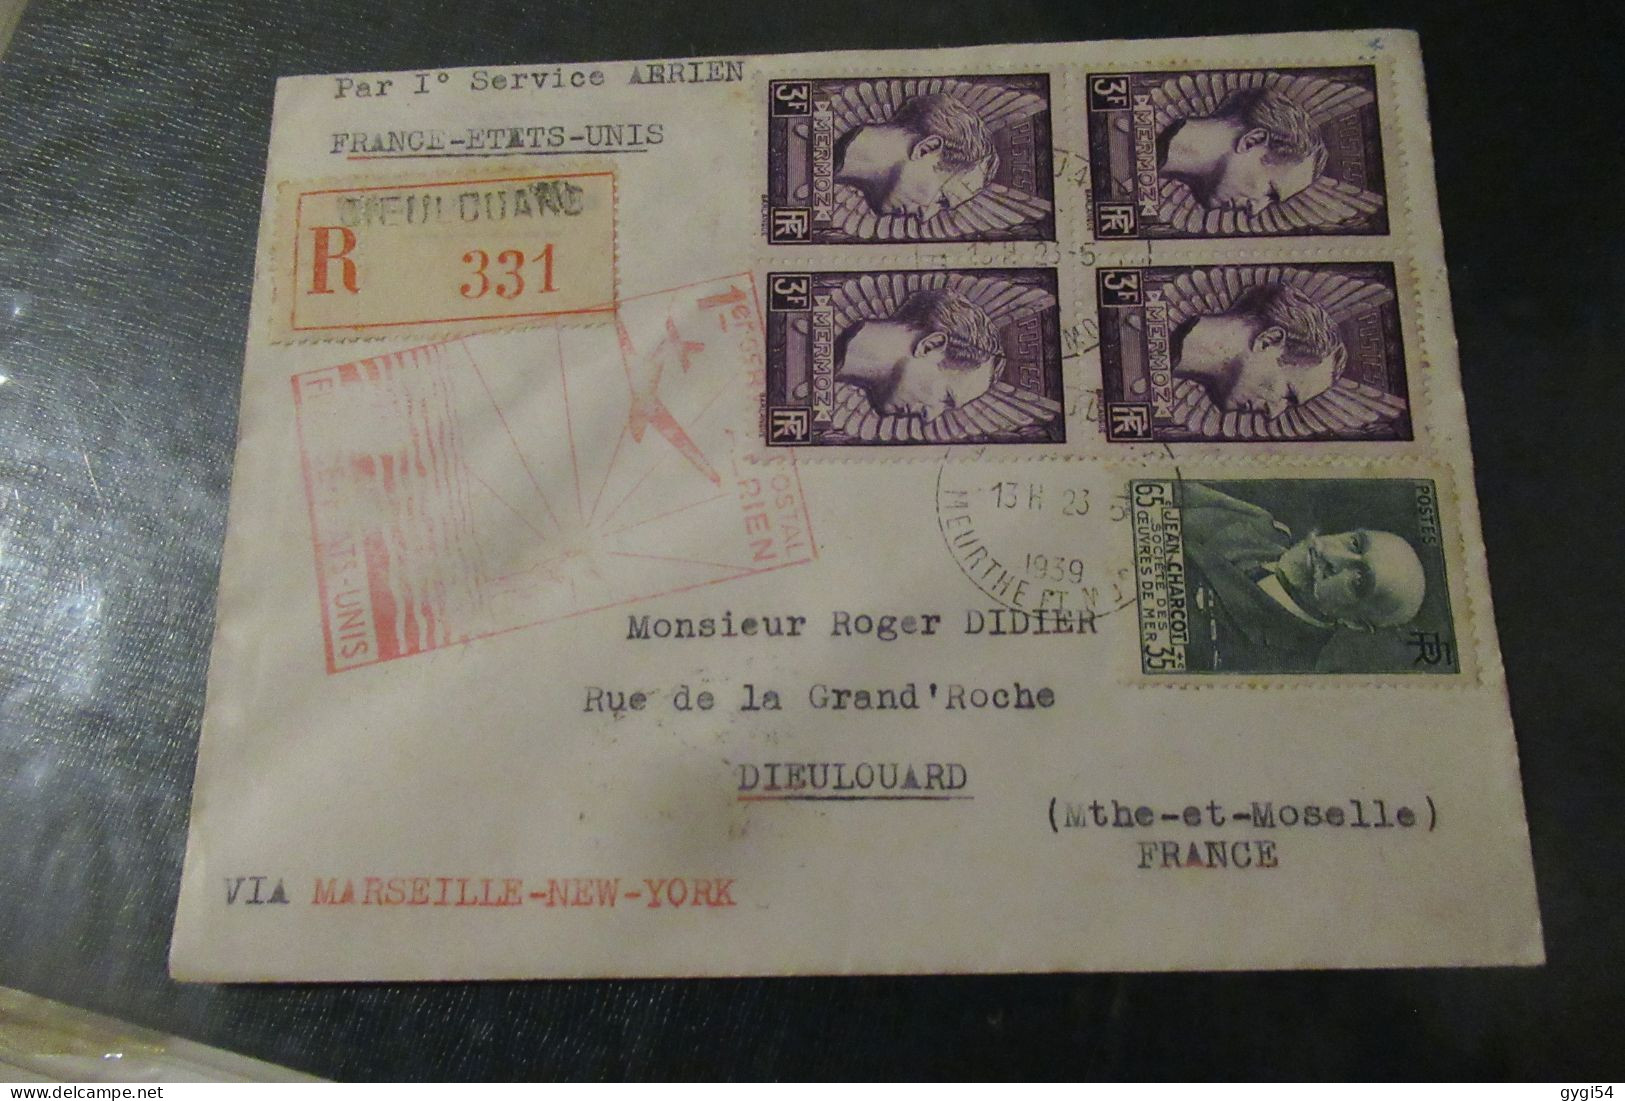 Par Premier Service Aérien France Etats - Unis 1939 Lettre R Dieulouard - Primeros Vuelos